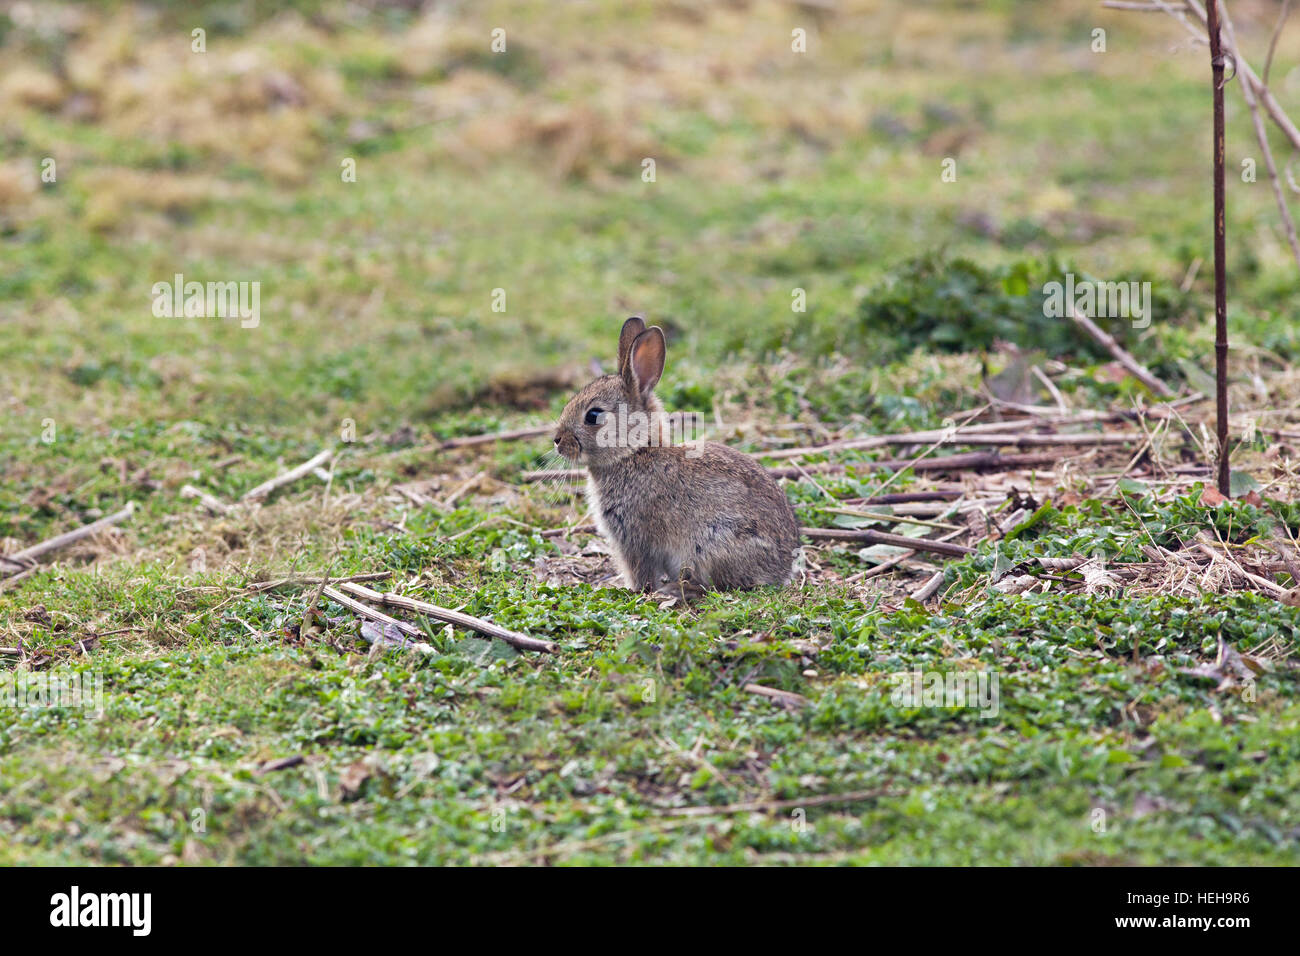 Europäischen Kaninchen (Oryctolagus Cuniculus). Entwöhnt, unabhängige, juvenile oder unreif, junge Tier im freien auffällig in kurzen Grünland. Stockfoto